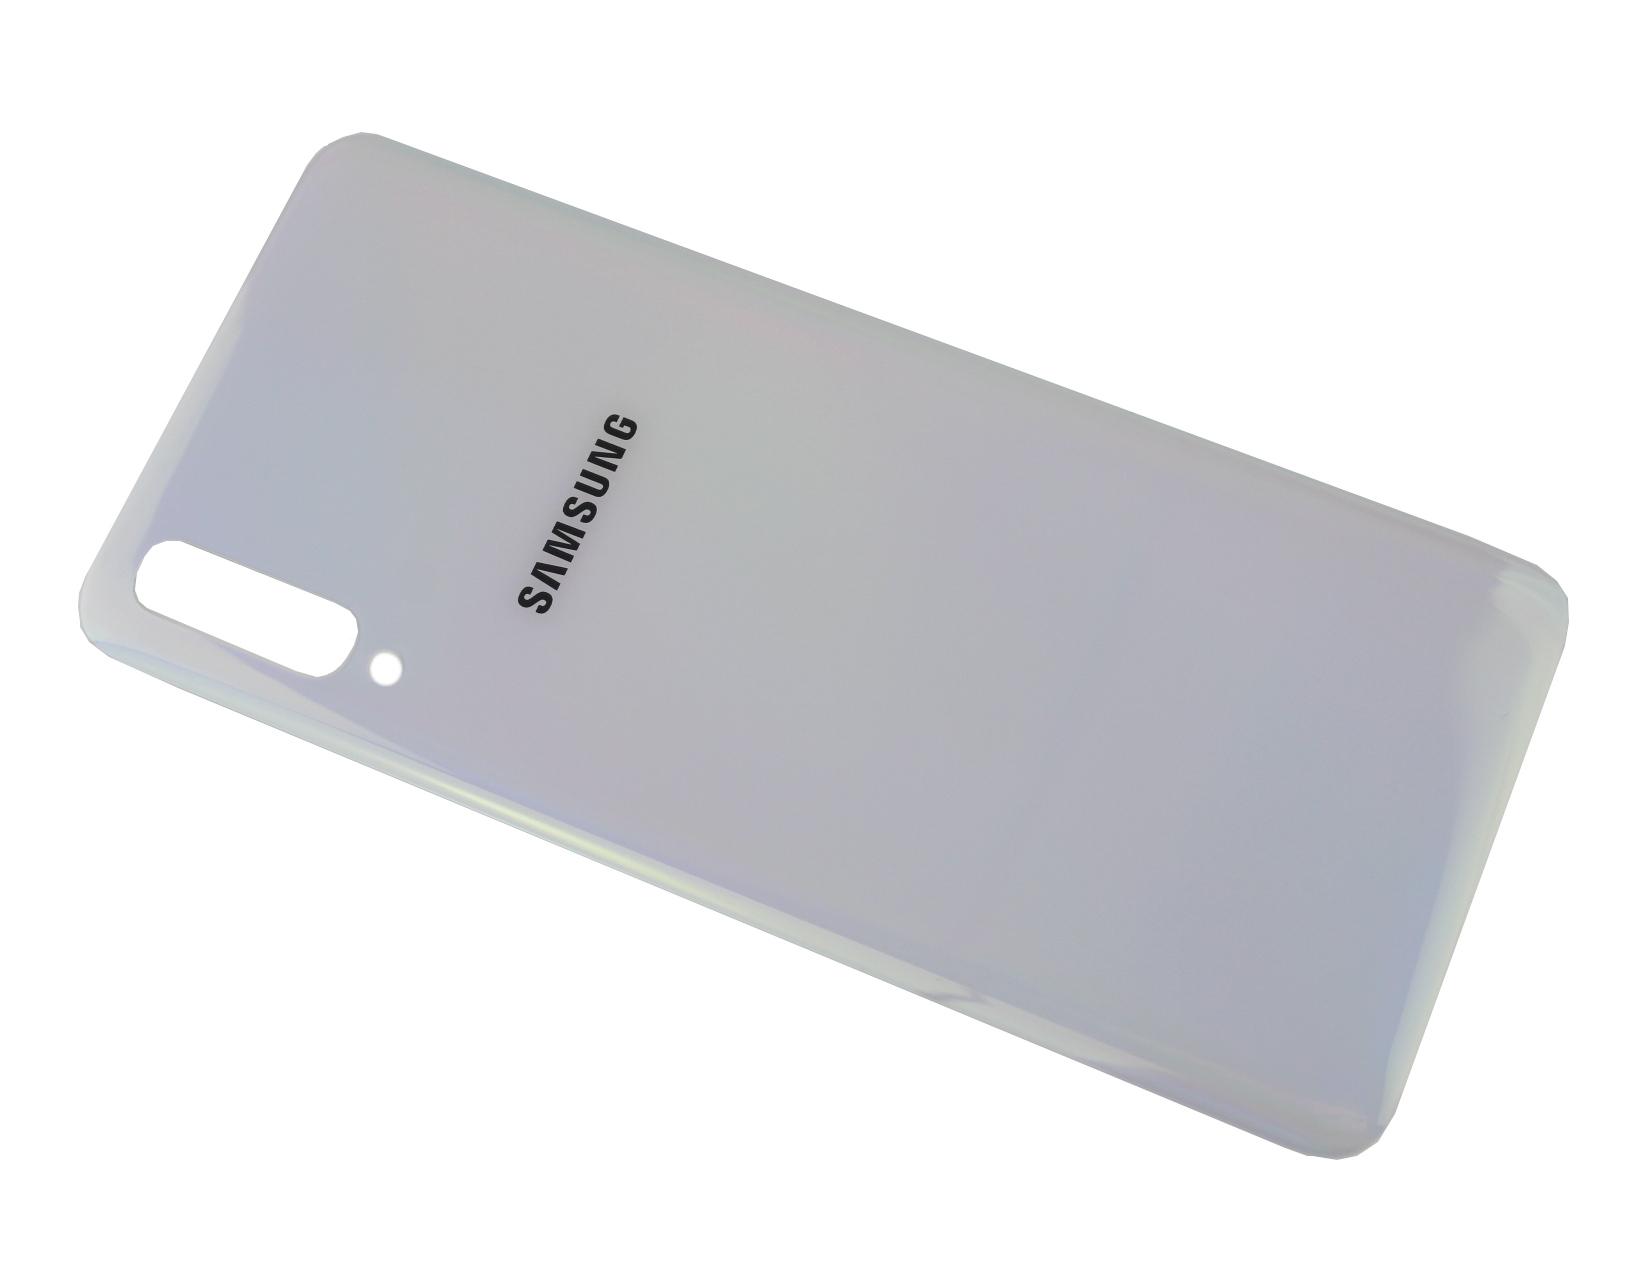 Originál kryt baterie Samsung Galaxy A70 SM-A705 bez očka kamery a montážní lepící pásky